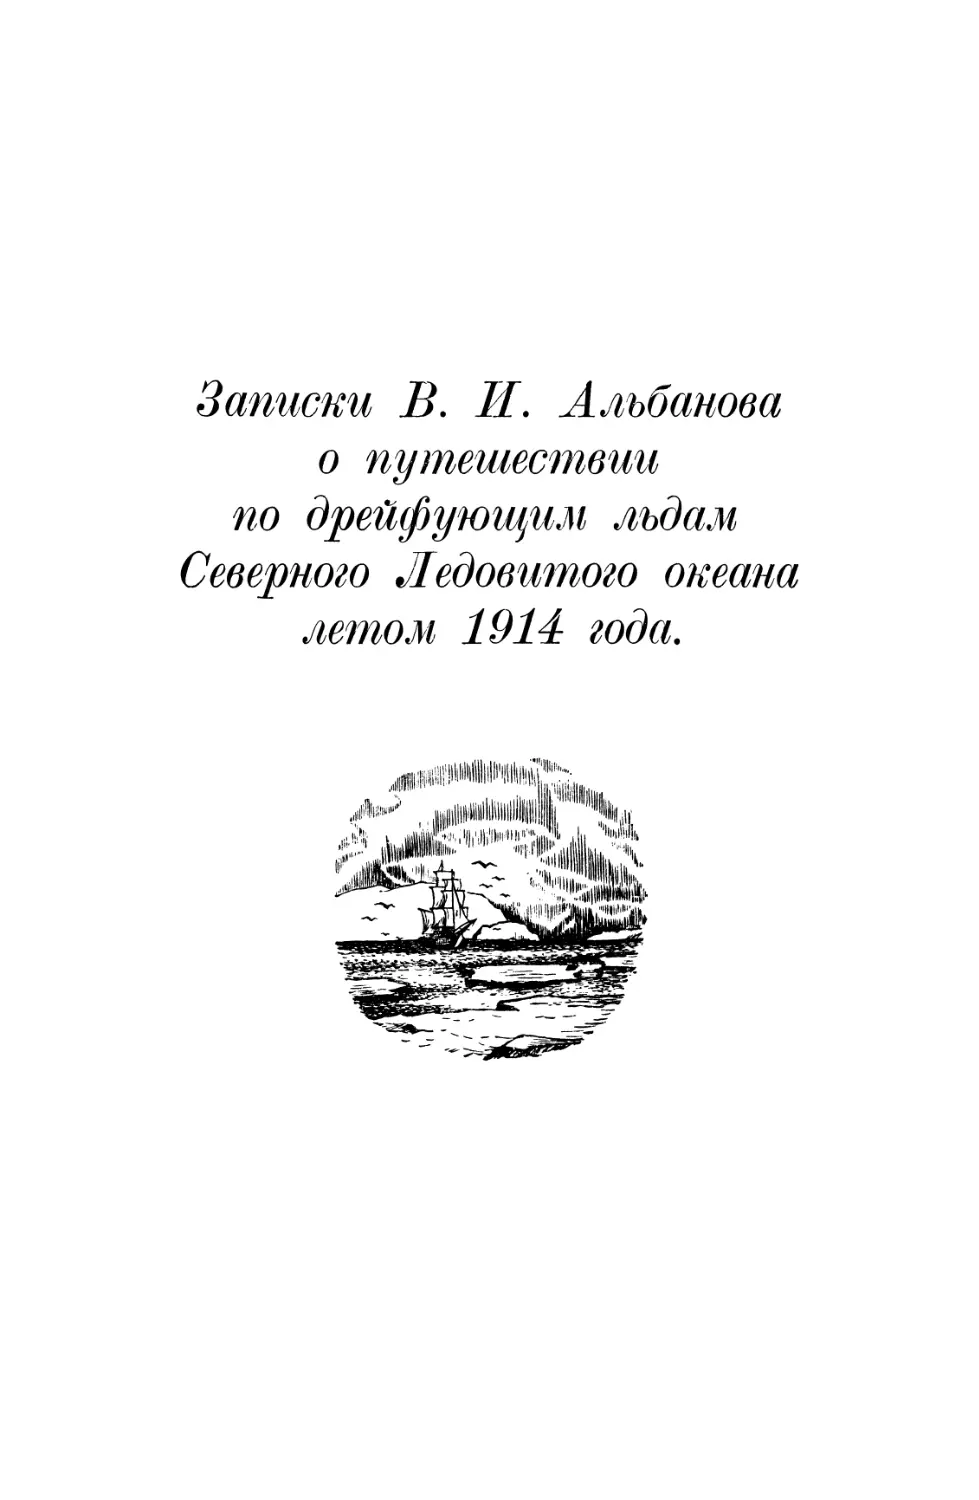 Записки В. И. Альбанова по дрейфующим льдам Северного Ледовитого океана летом 1914 года